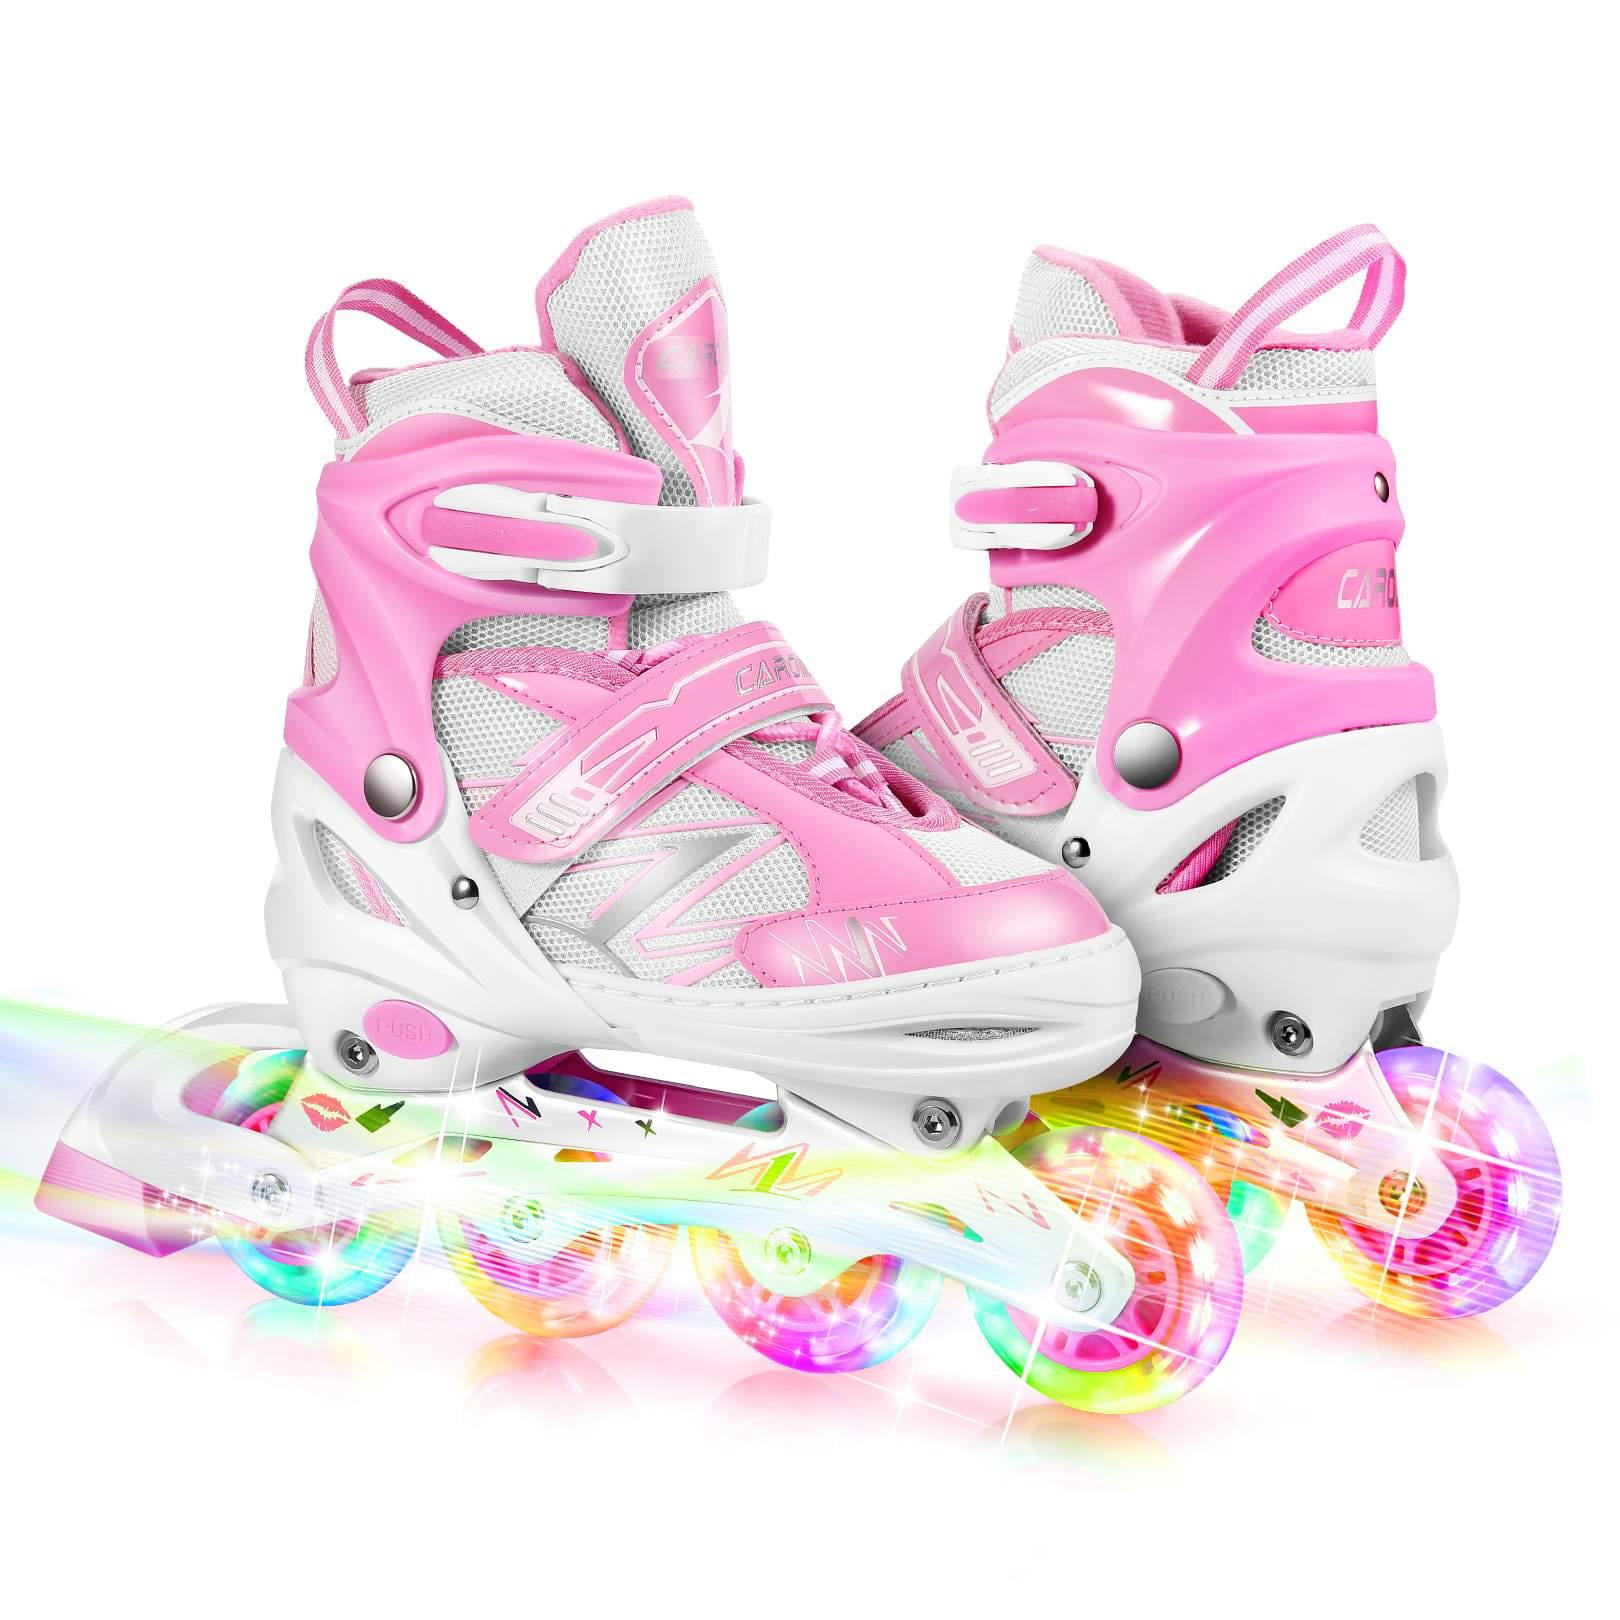 Caroma Inline Skates & Roller Skates Kids Boy Girl Size 5~8 Adjustable Blades 